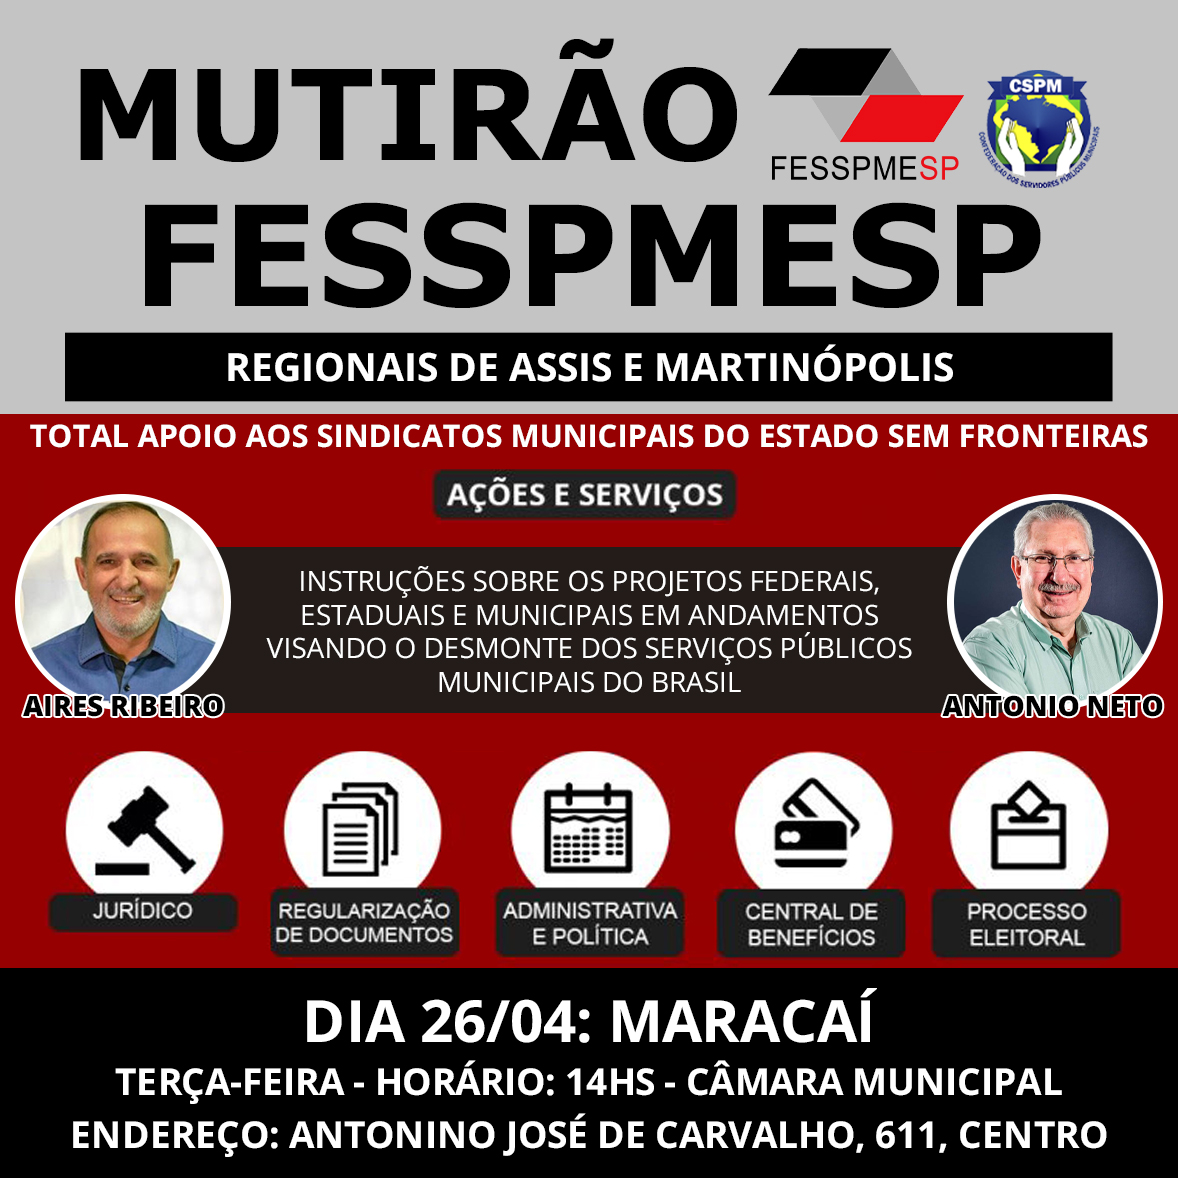 FESSPMESP divulga o próximo Mutirão presencial, dia 26/04 em Maracaí